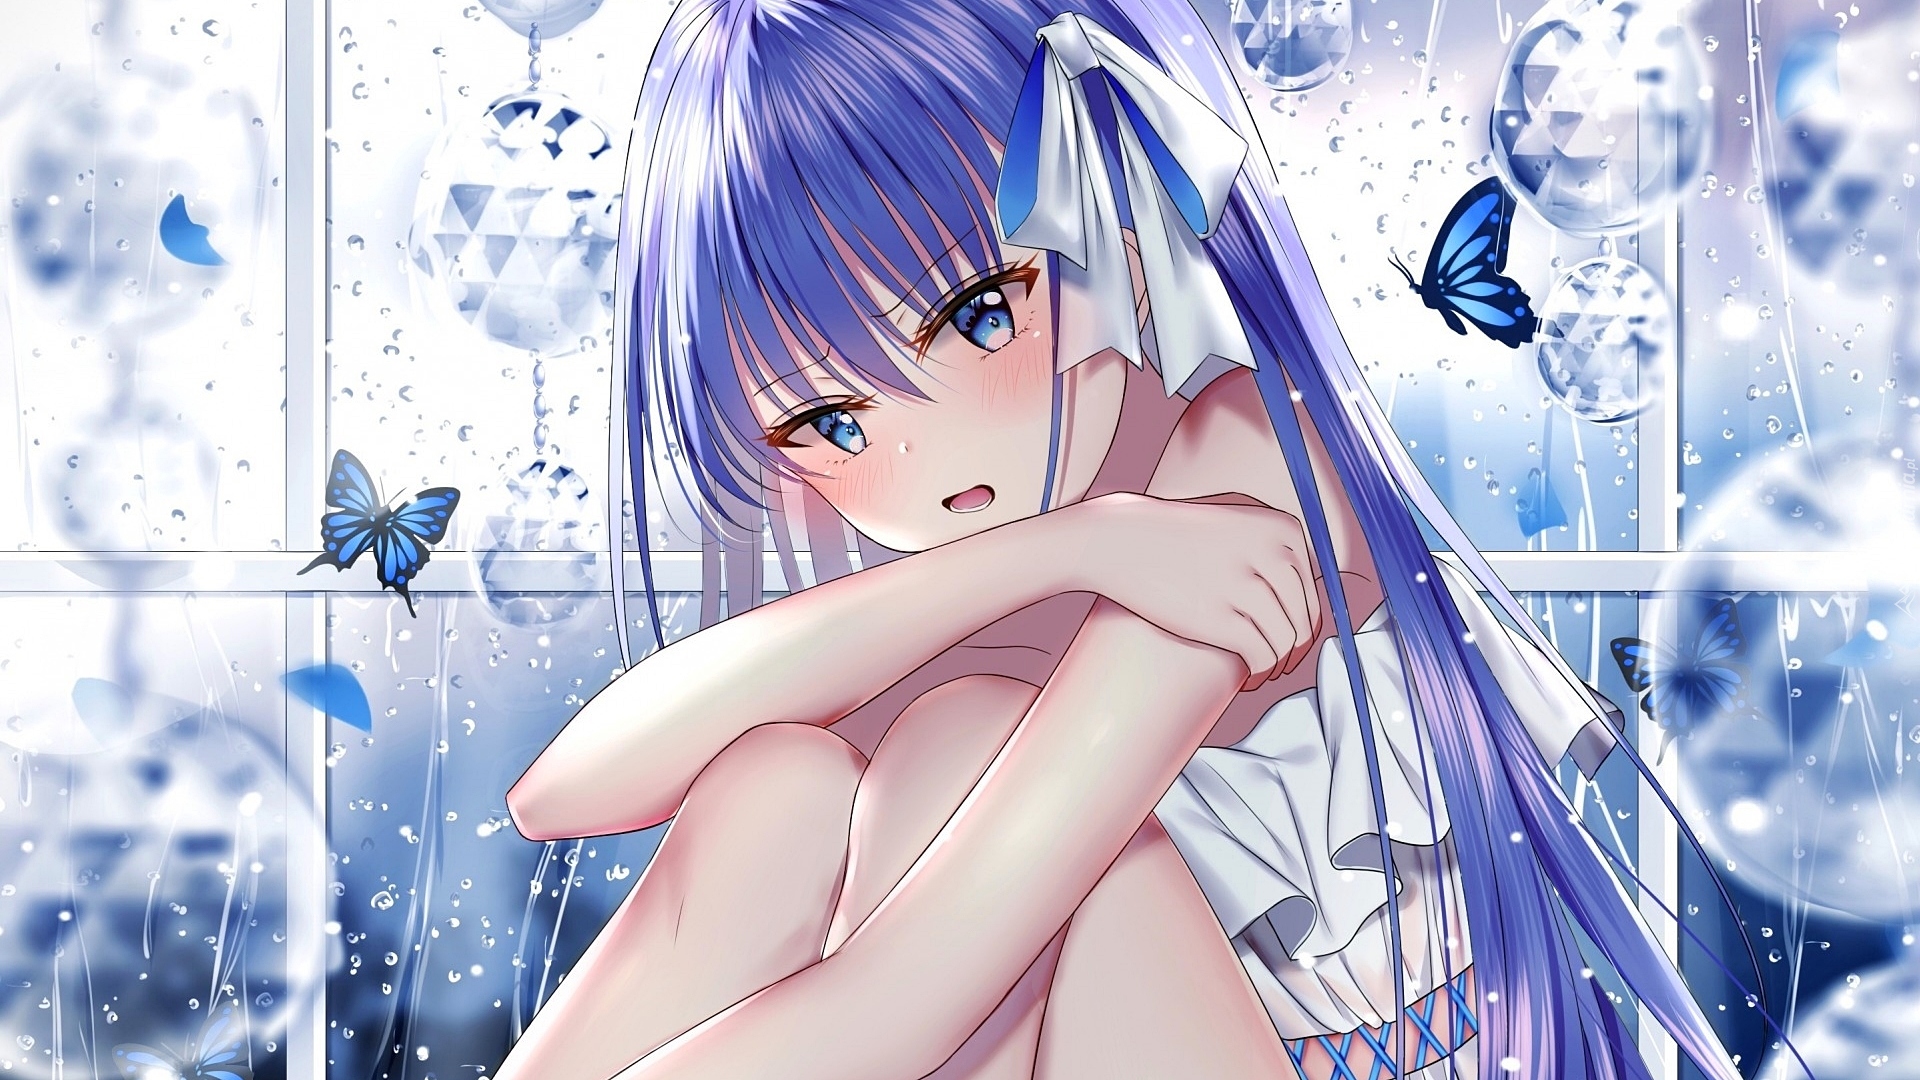 Manga Anime, Dziewczyna, Niebieskie włosy, Kokarda, Okno, Motyle